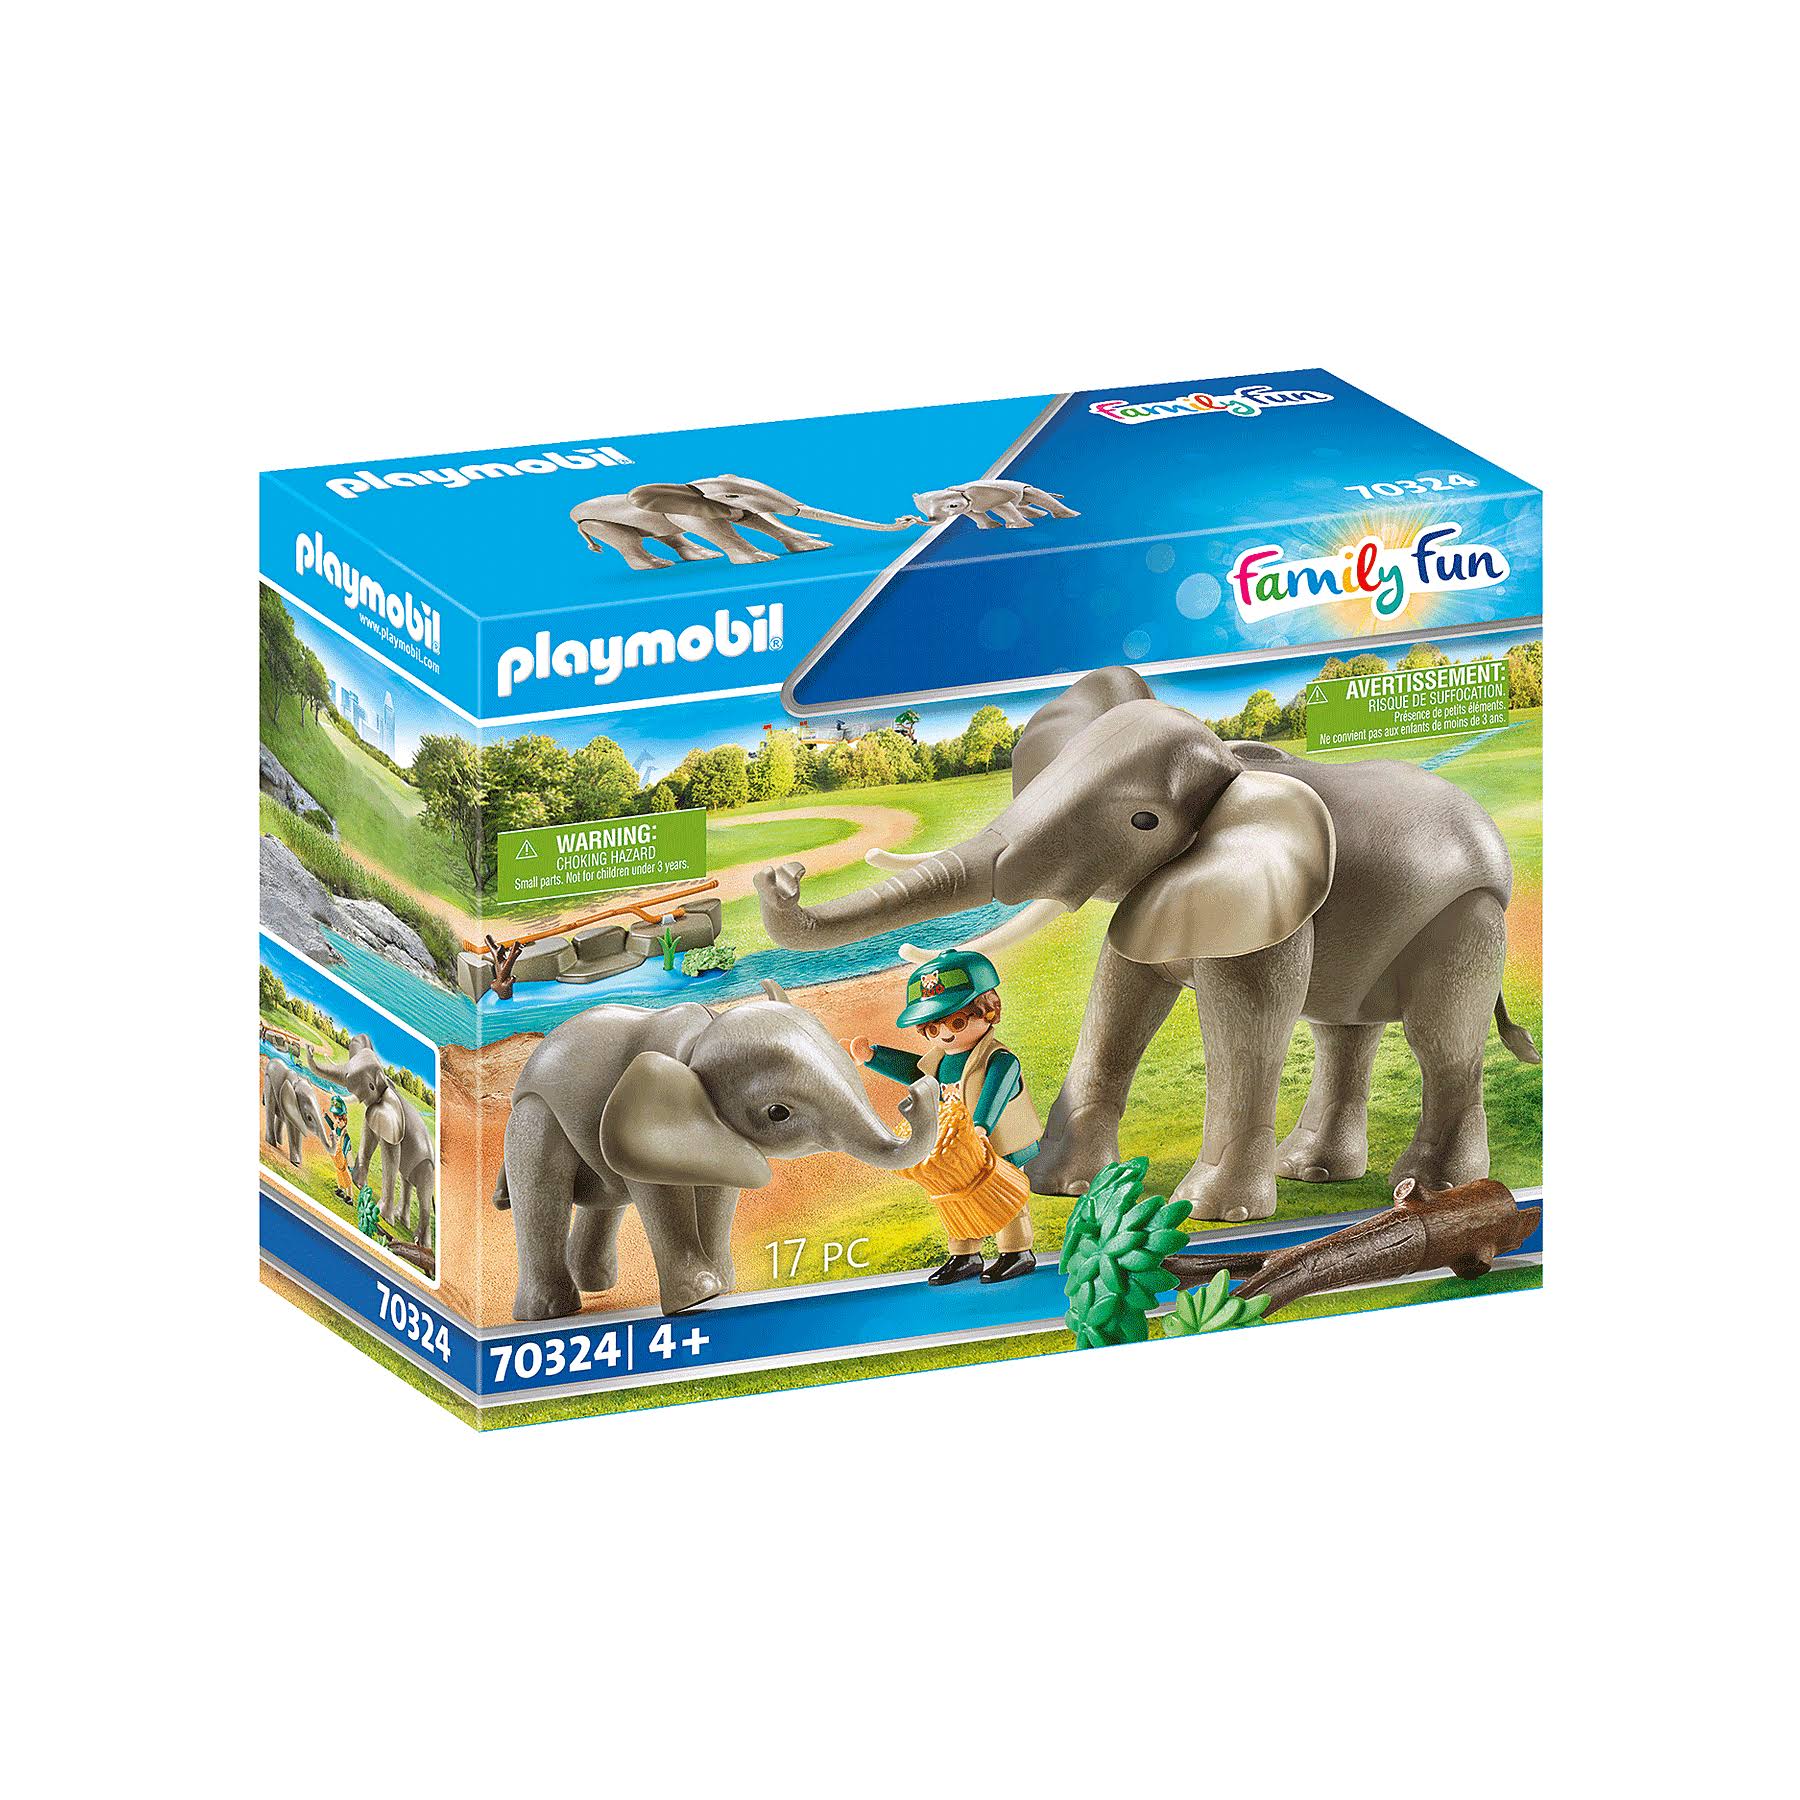 Playmobil 70324 Elephant Habitat